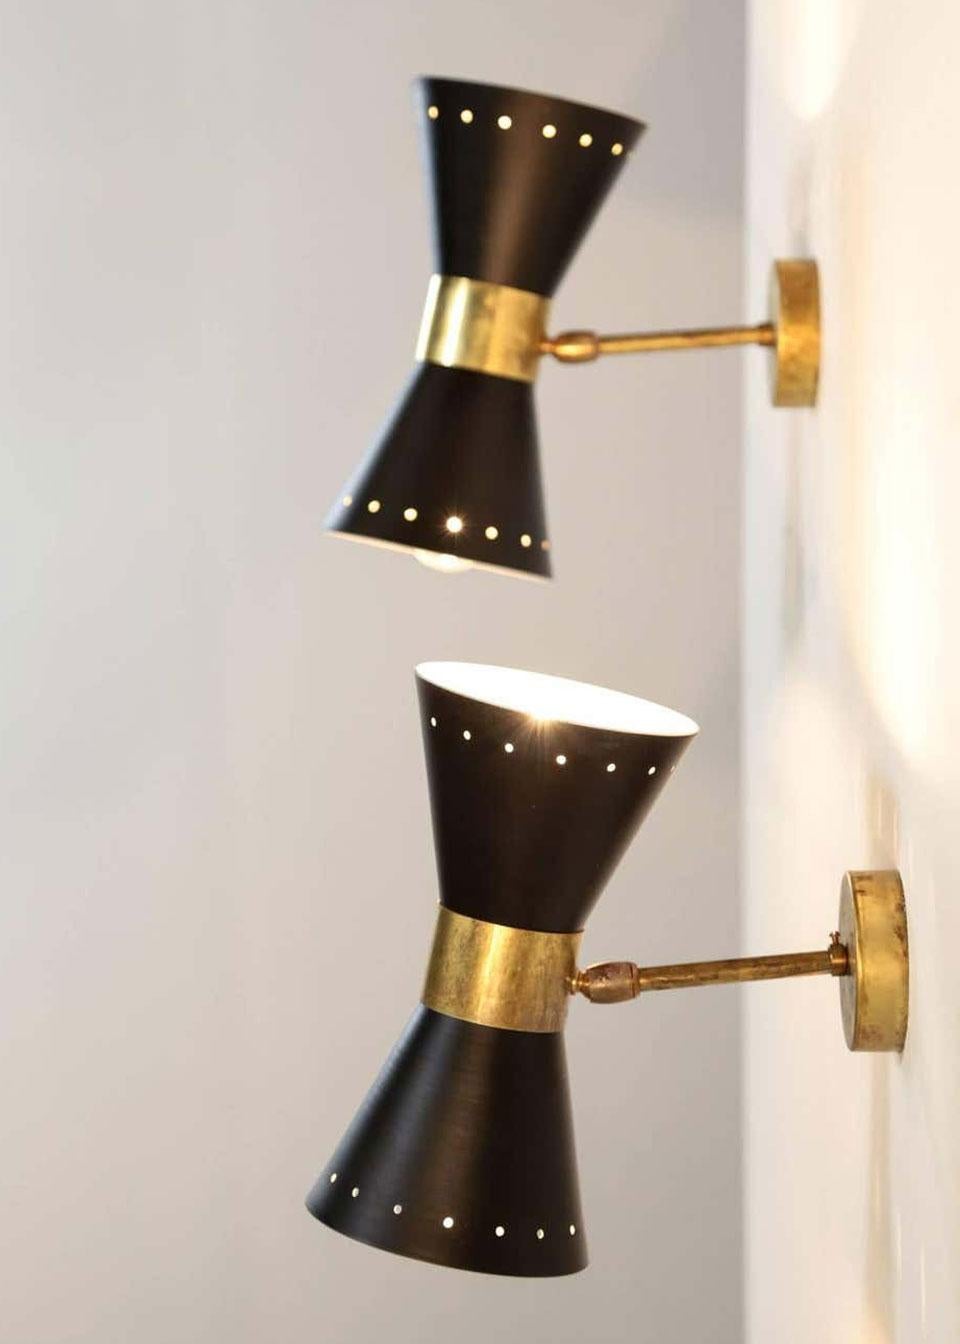 1 of 6 Italian Modern Design Wall Light Diabolo Sconce Stilnovo Style Brass 1950 For Sale 1